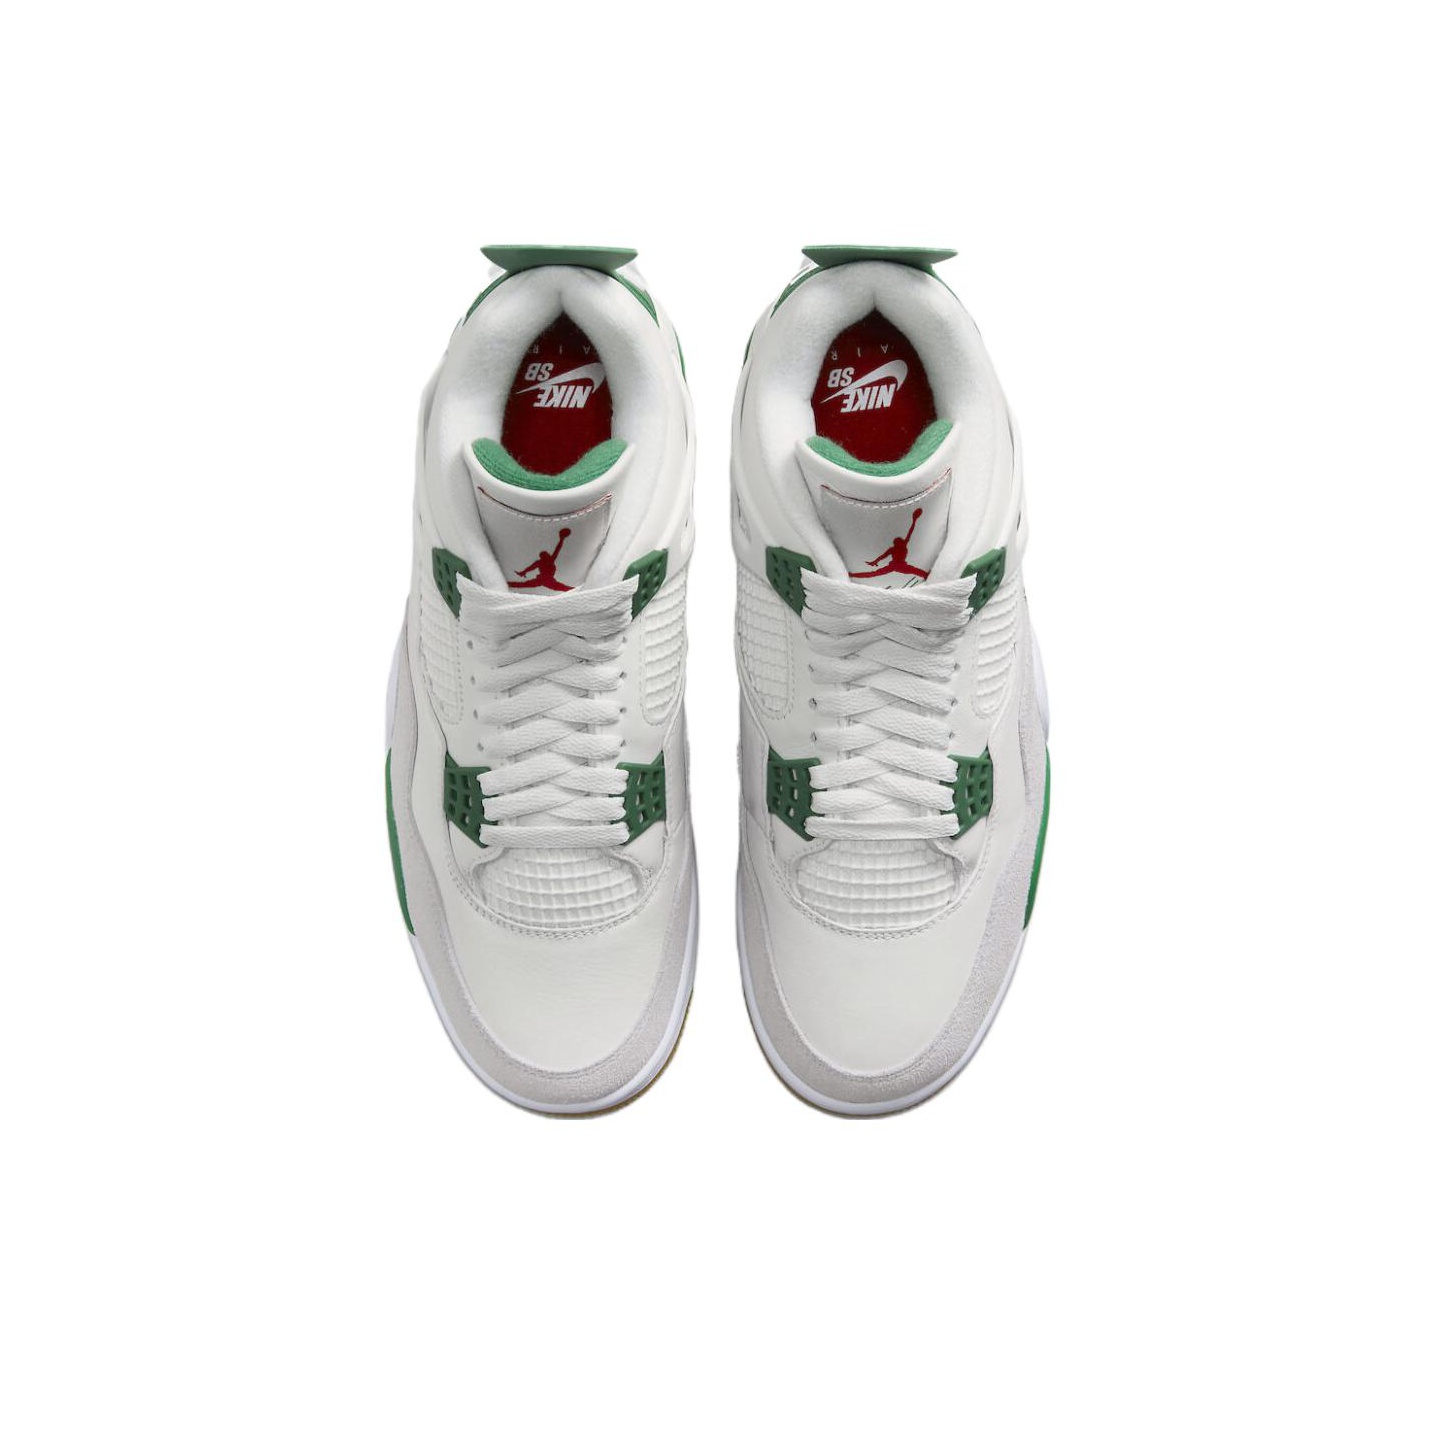 Nike SB x Jordan Air Jordan 4 Retro Pine Green